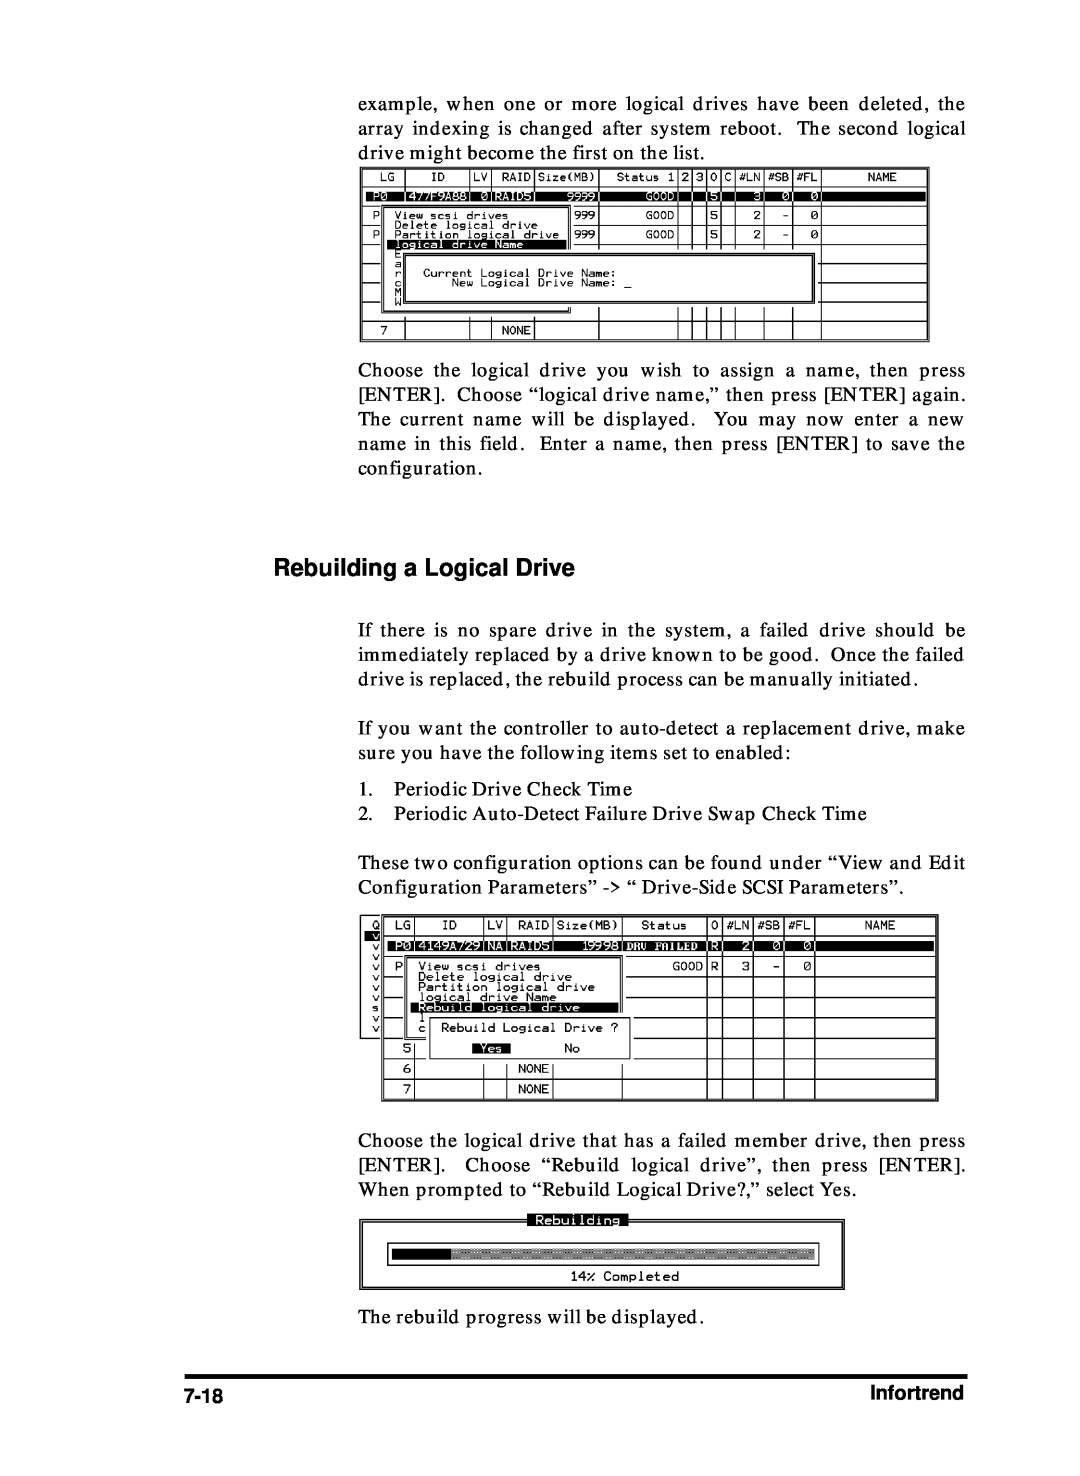 Compaq Infortrend manual Rebuilding a Logical Drive, 7-18 